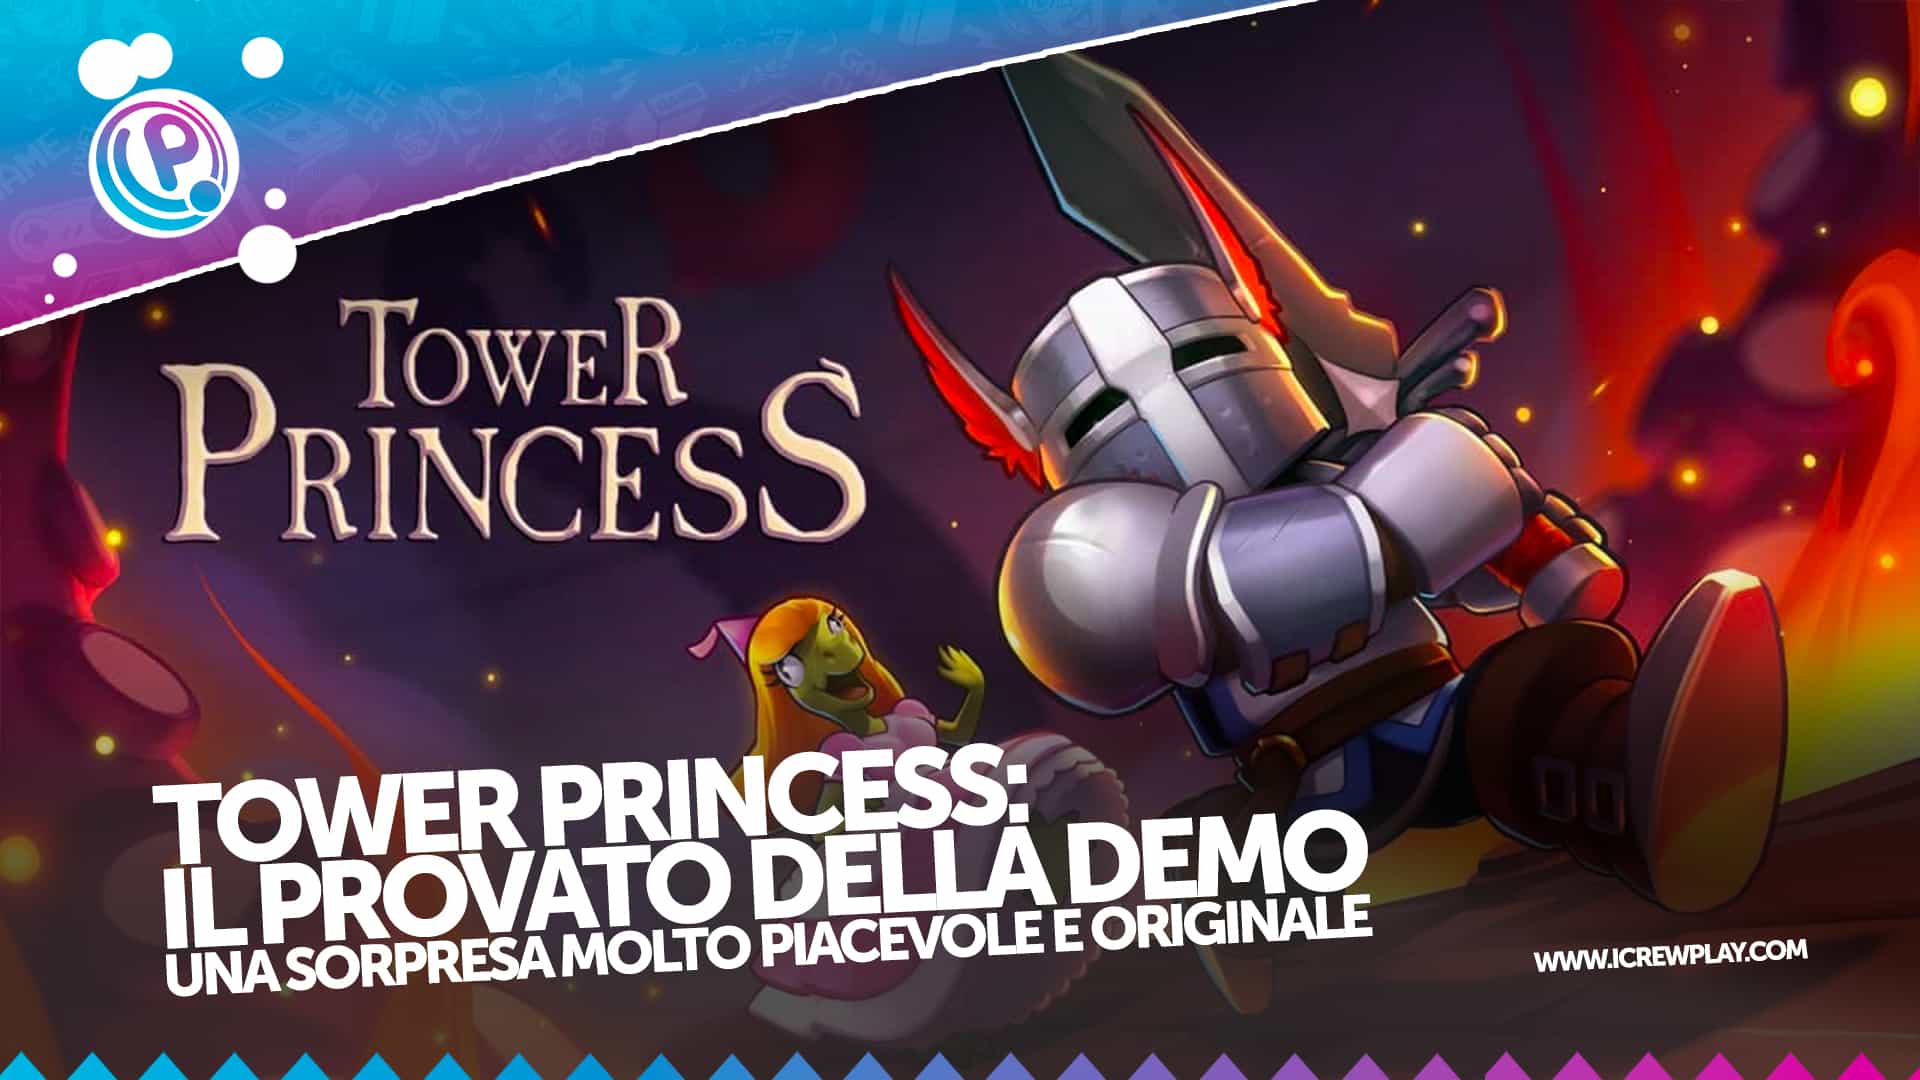 Tower Princess: il provato della demo 2